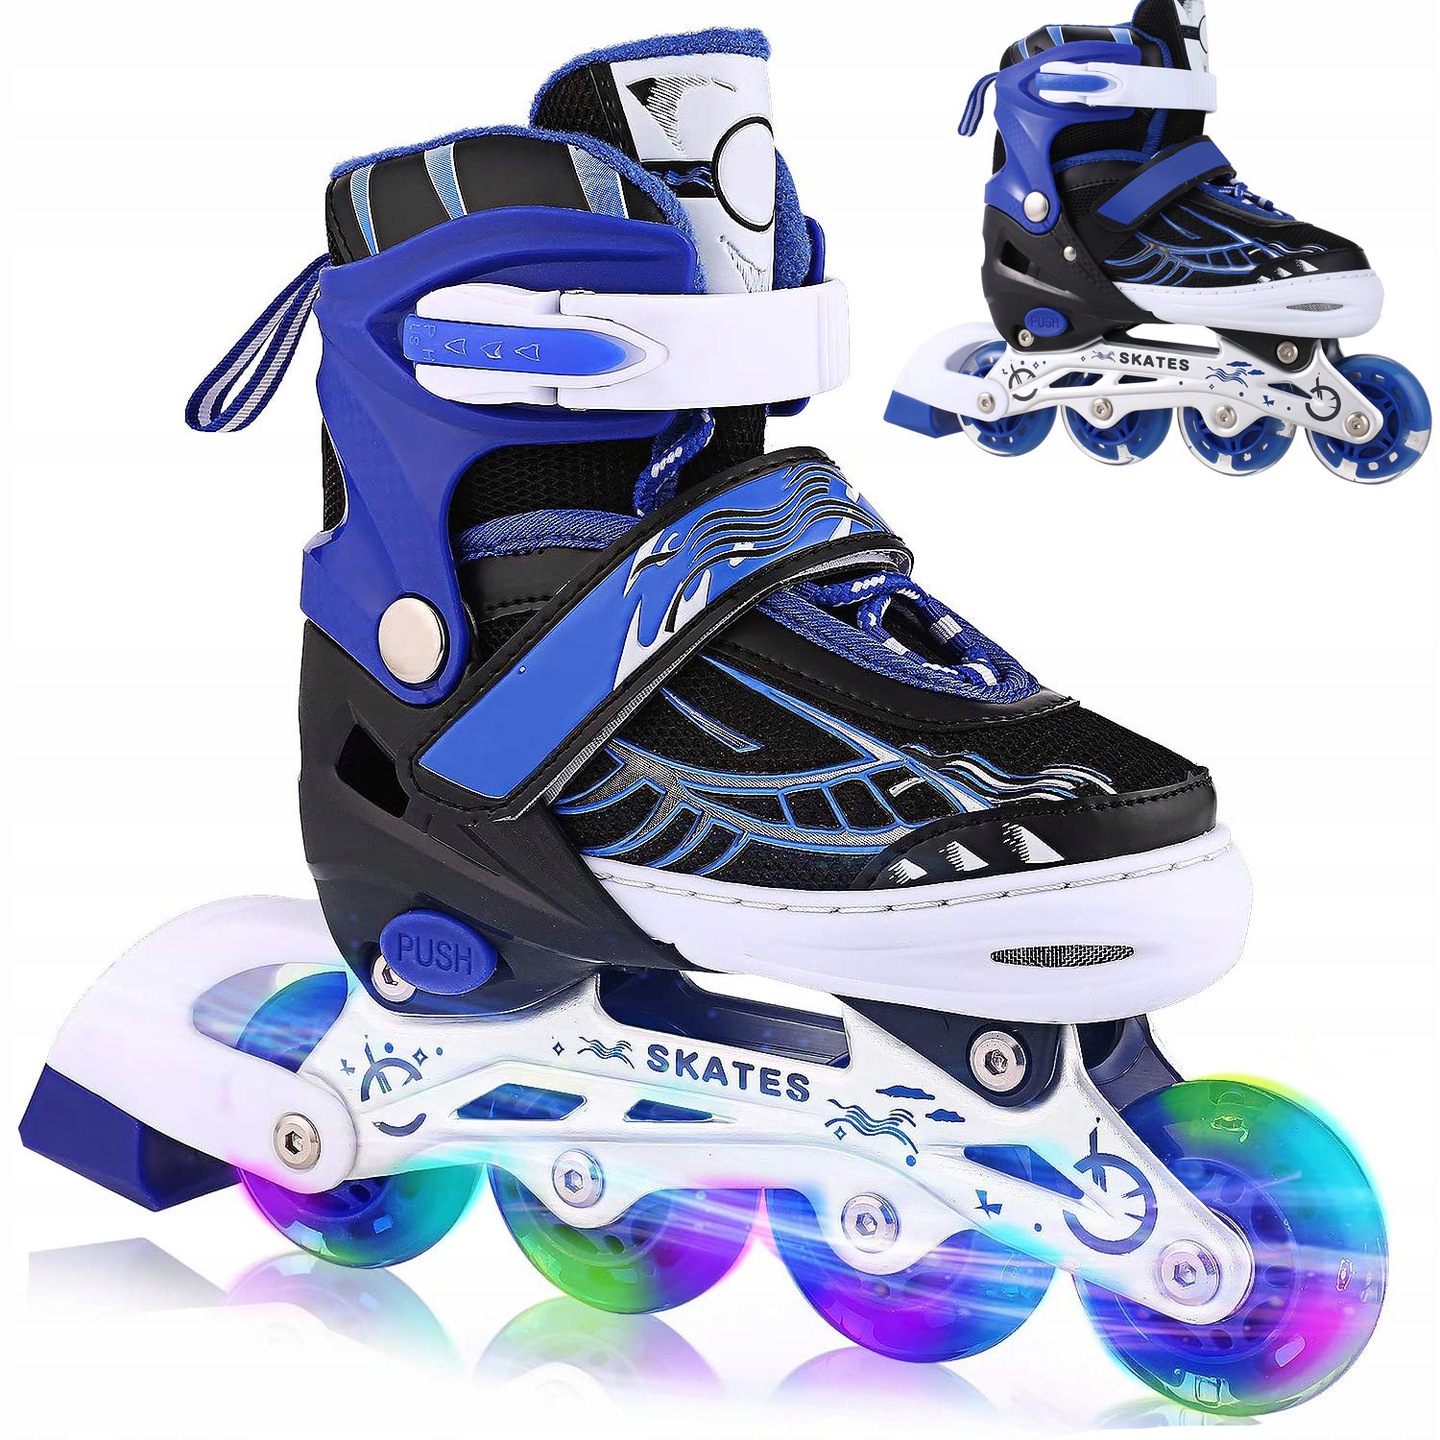 Kinder Inlineskates Inline Skates Inliner blau schwarz verstellbar Gr 39-42 